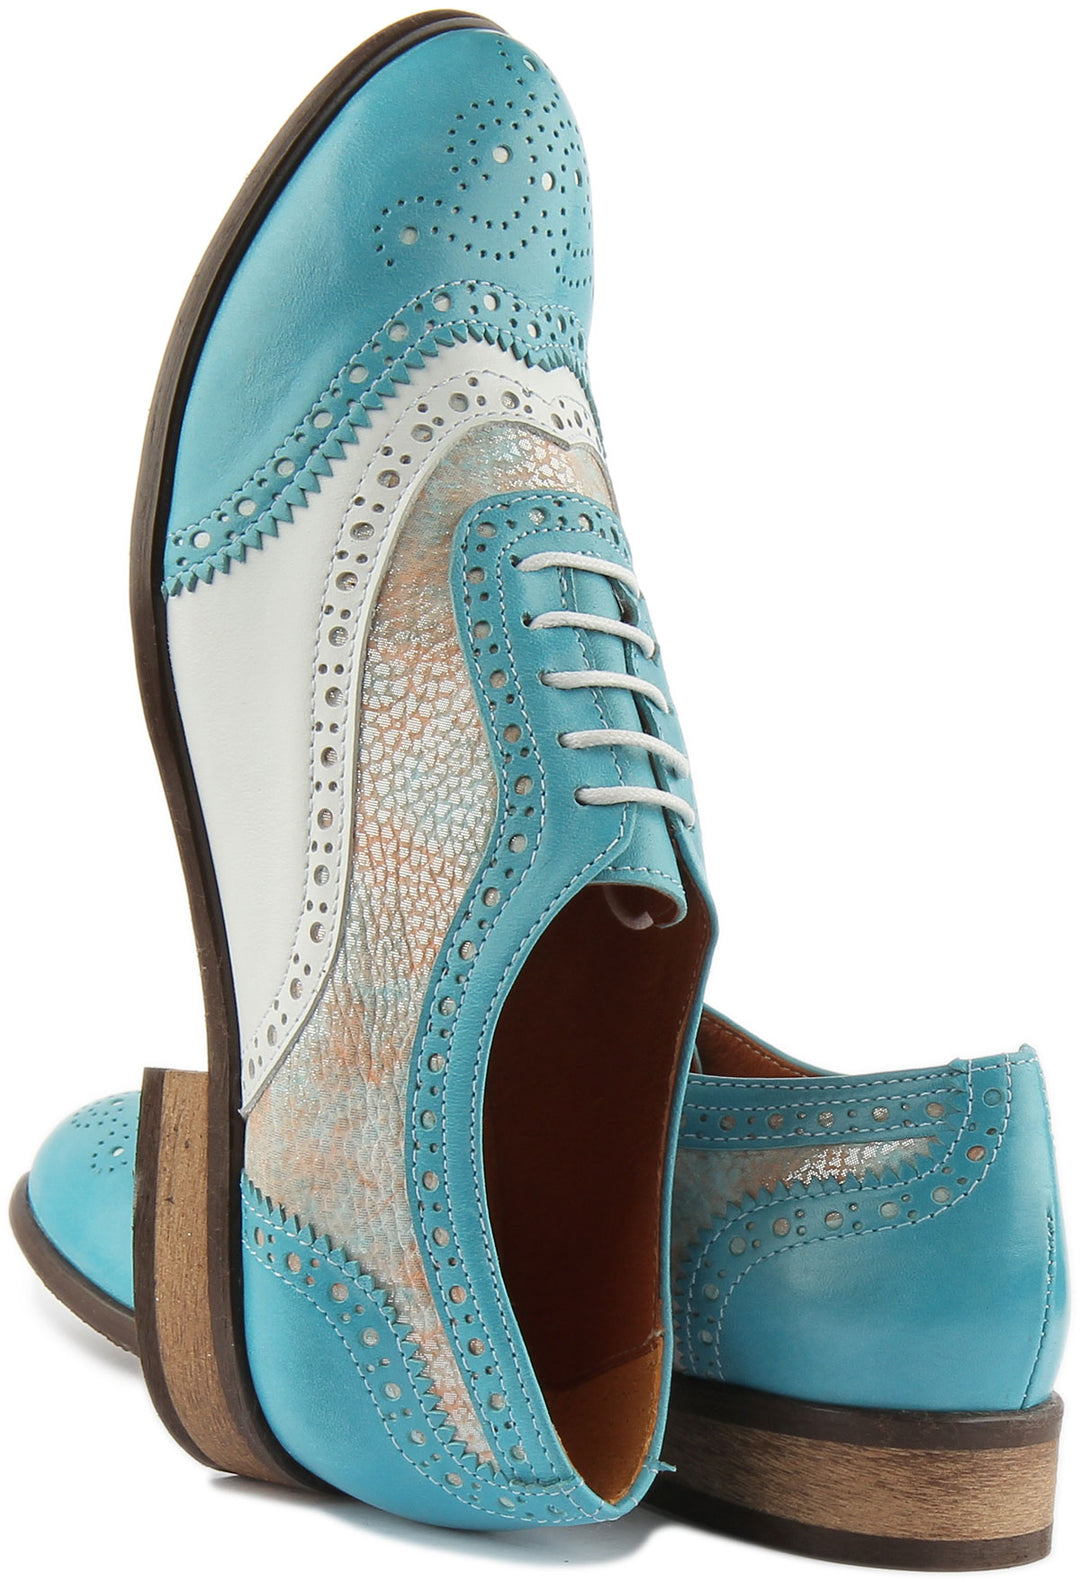 JUST REESS Rose Frauen Schnürung Leder Gedruckt Brogue Schuhe Blau